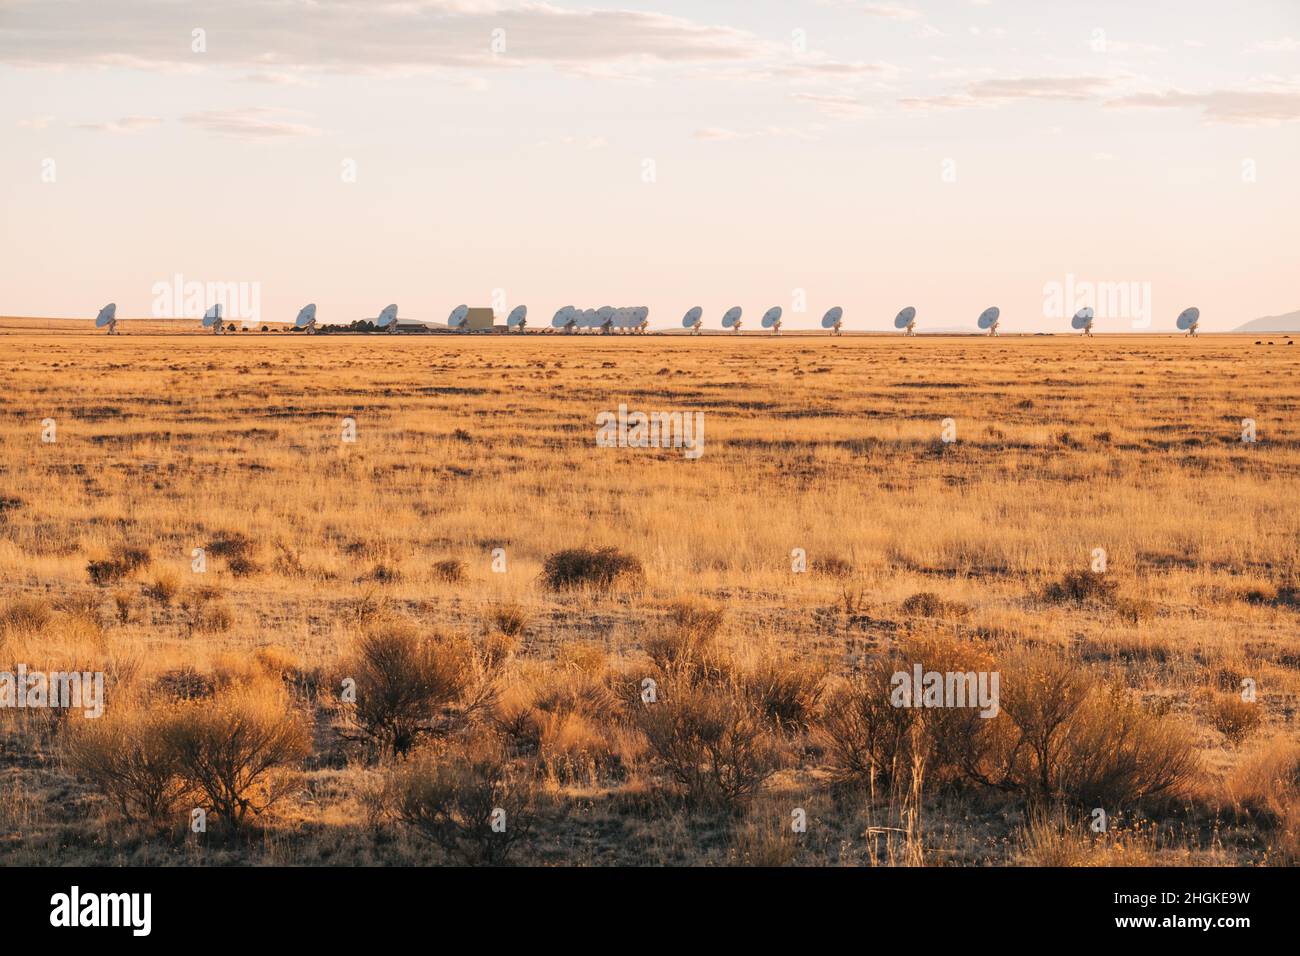 Radioteleskopschalen stapelten sich auf der Karl G. Jansky Very Large Array auf der Ebene von San Agustin, New Mexico Stockfoto